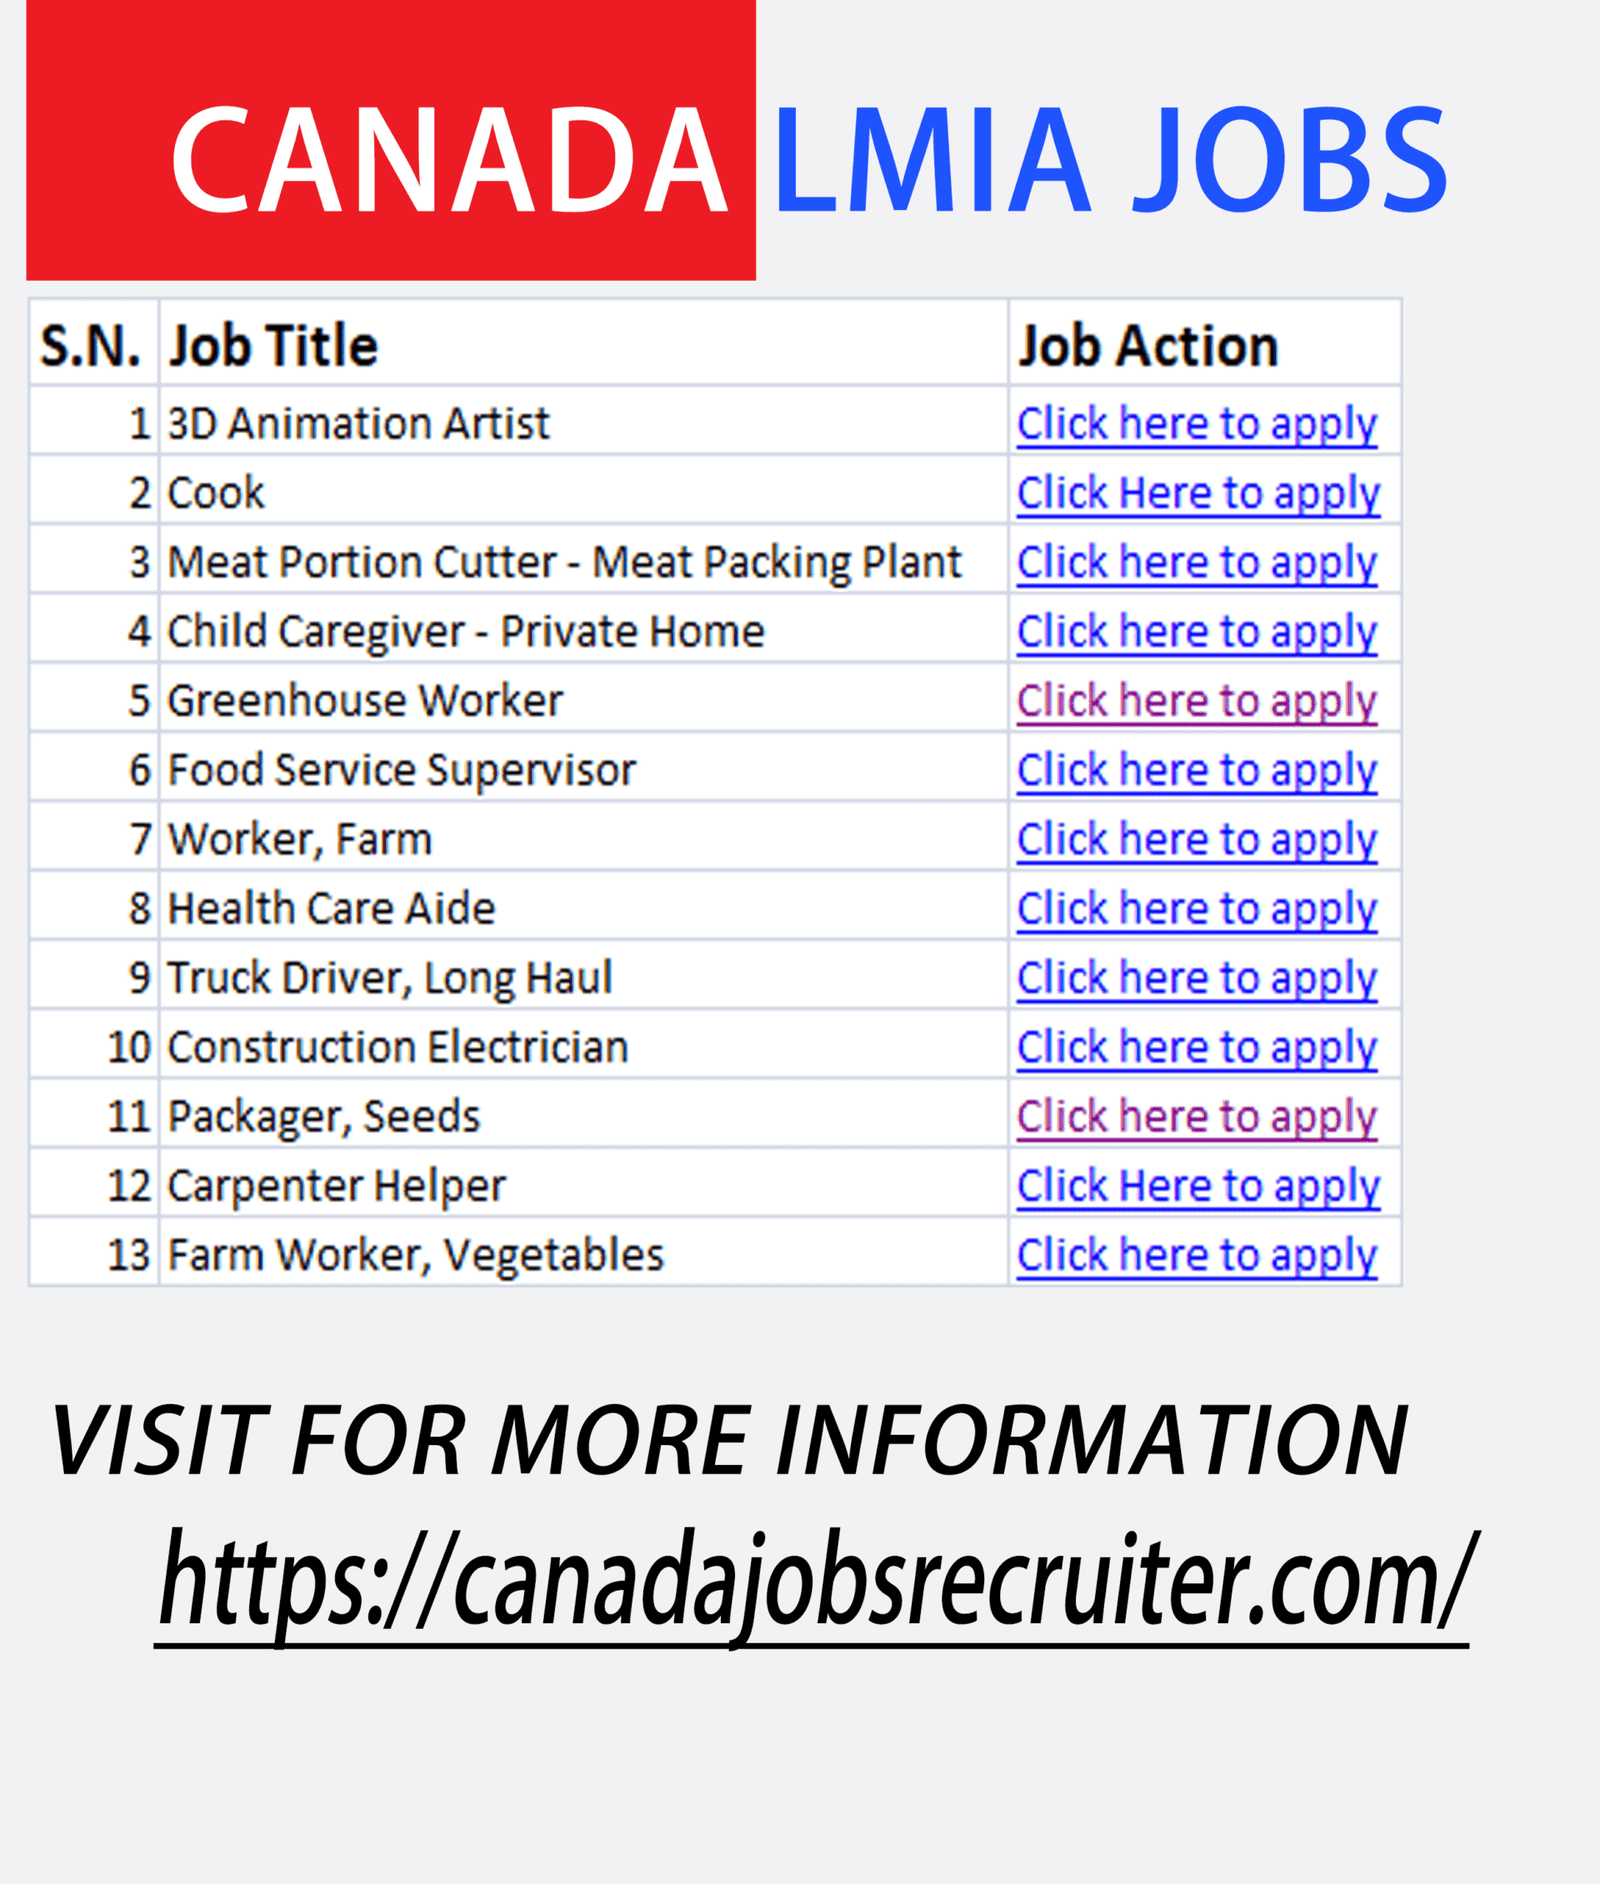 Canada LMIA Jobs Express Entry (Immigrants) 2022